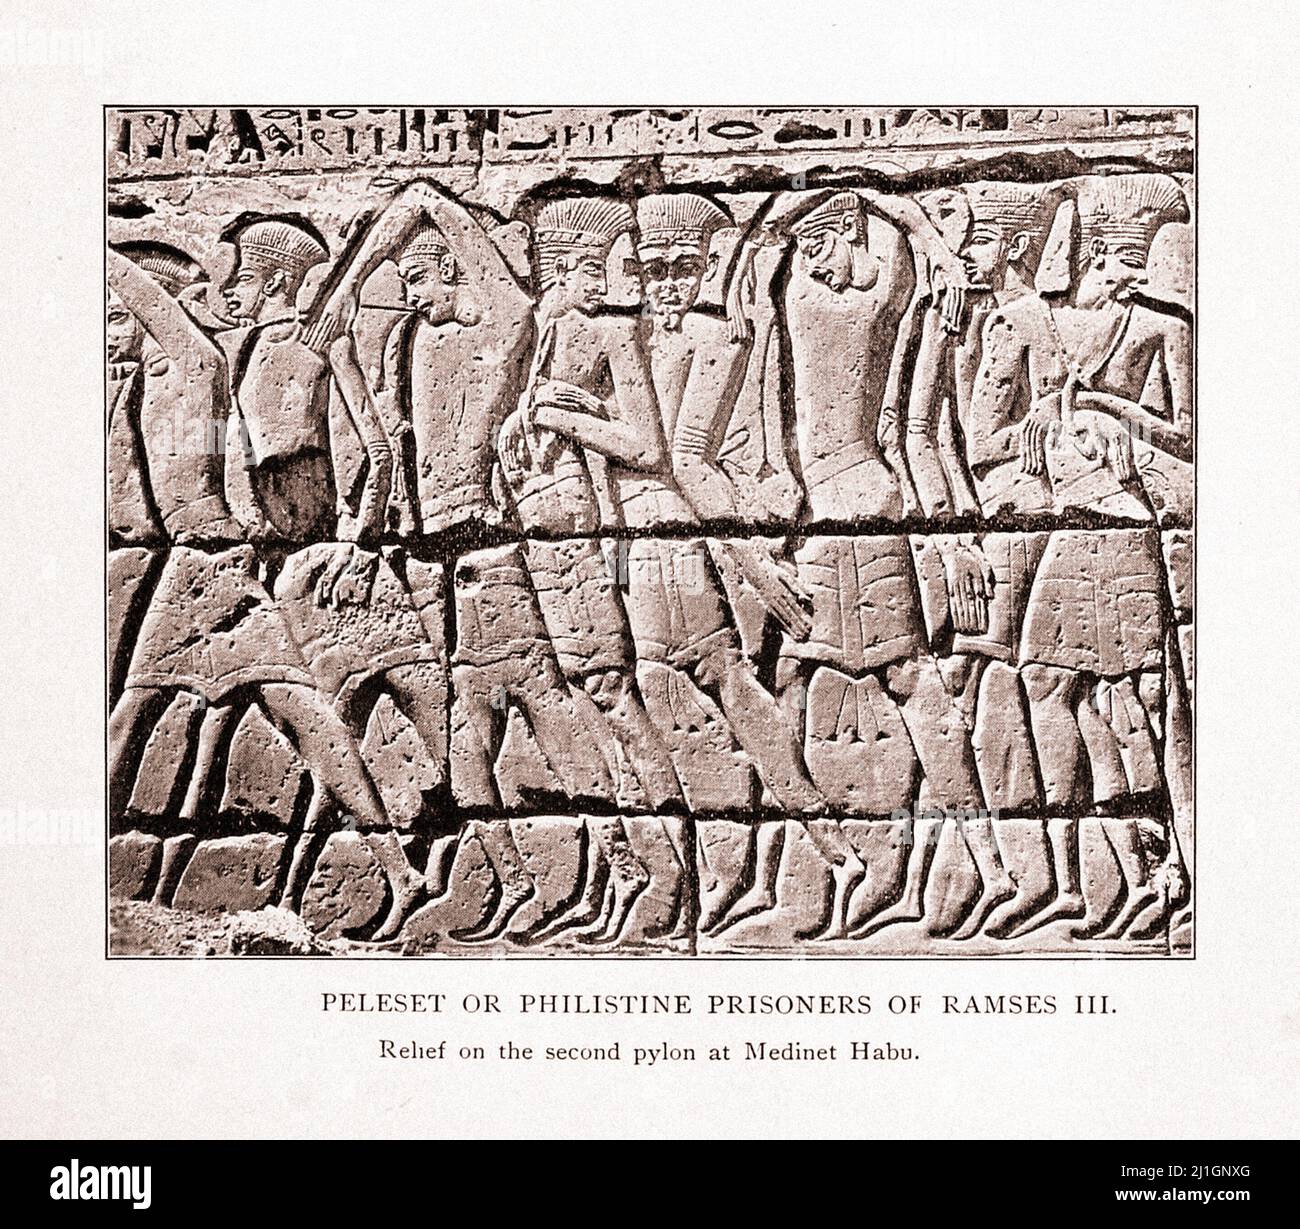 Égypte ancienne. Le Nouveau Royaume (1549–1069 av. J.-C.). Illustration de 1912 Peleset des prisonniers Philistins de Ramses III Soulagement sur le second pylône à Medin Banque D'Images